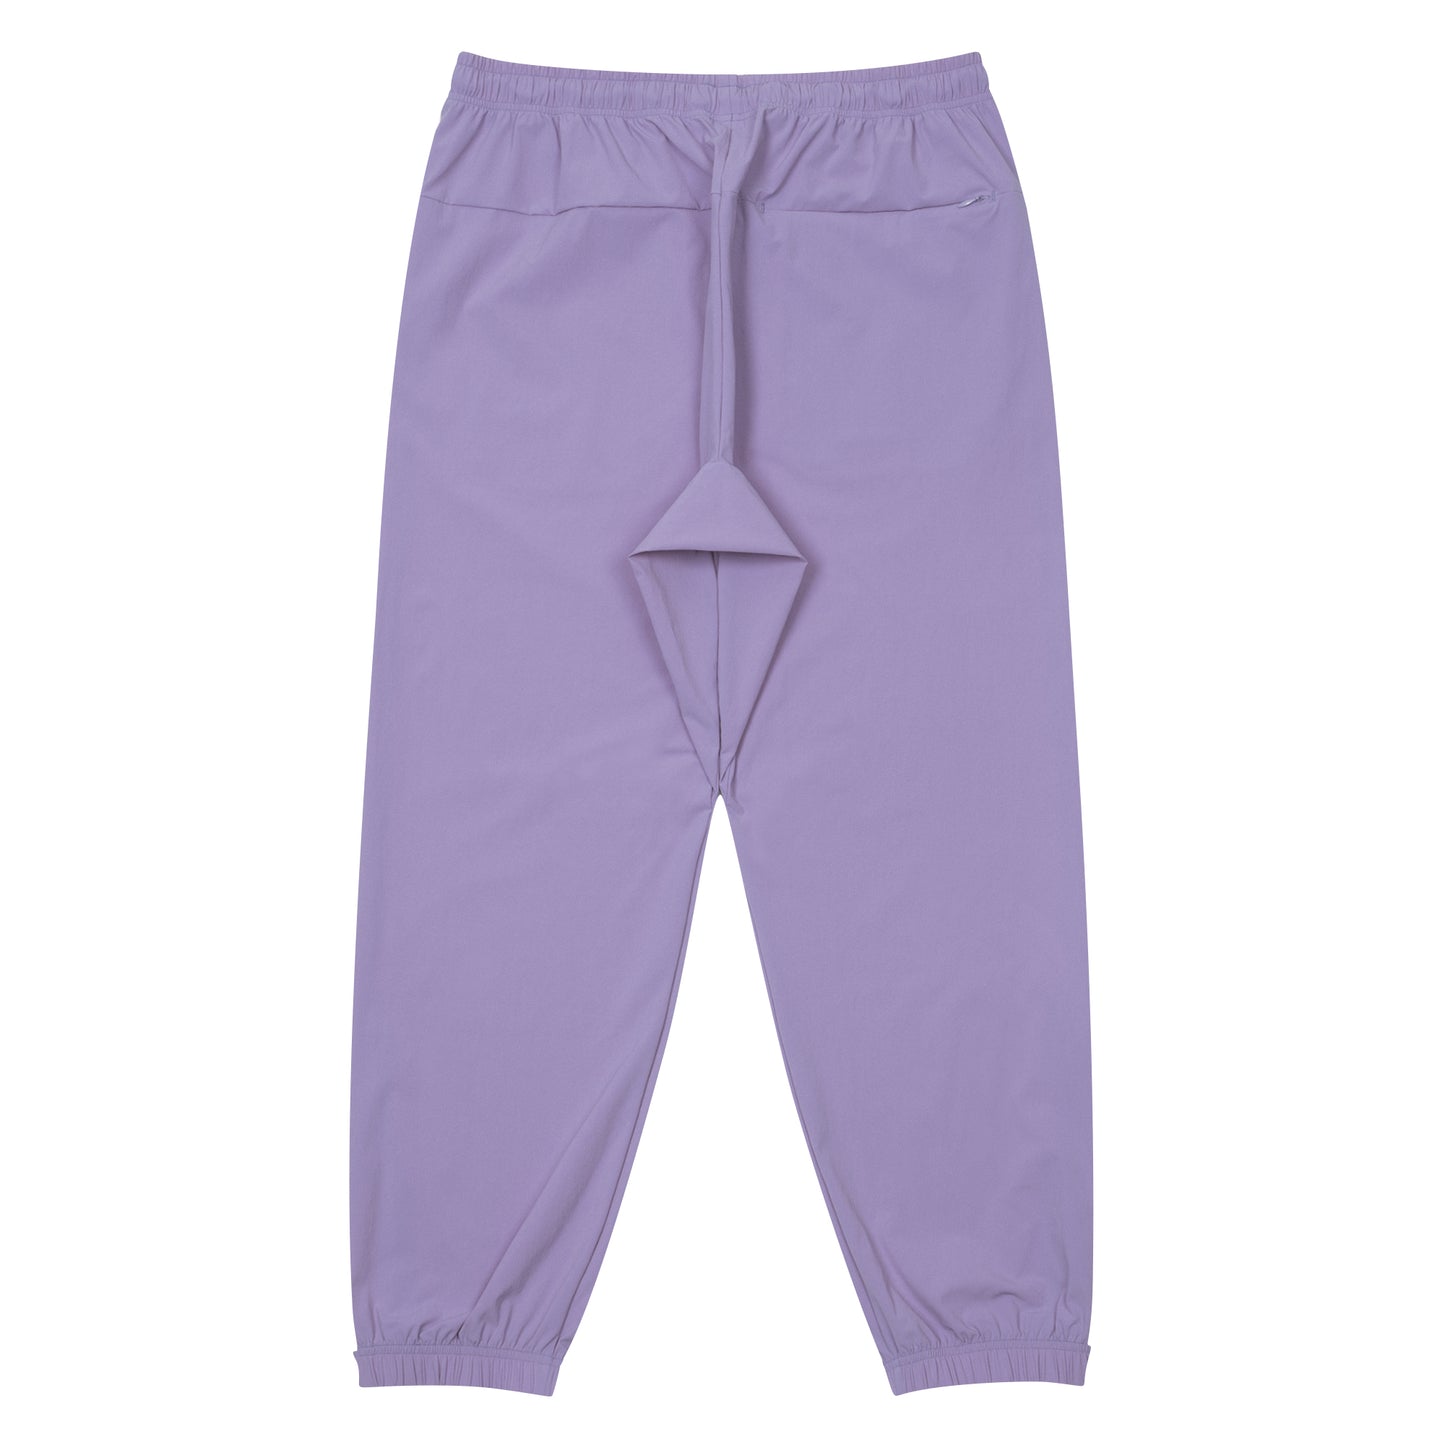 Stretch Nylon City Long Pants (lavender)